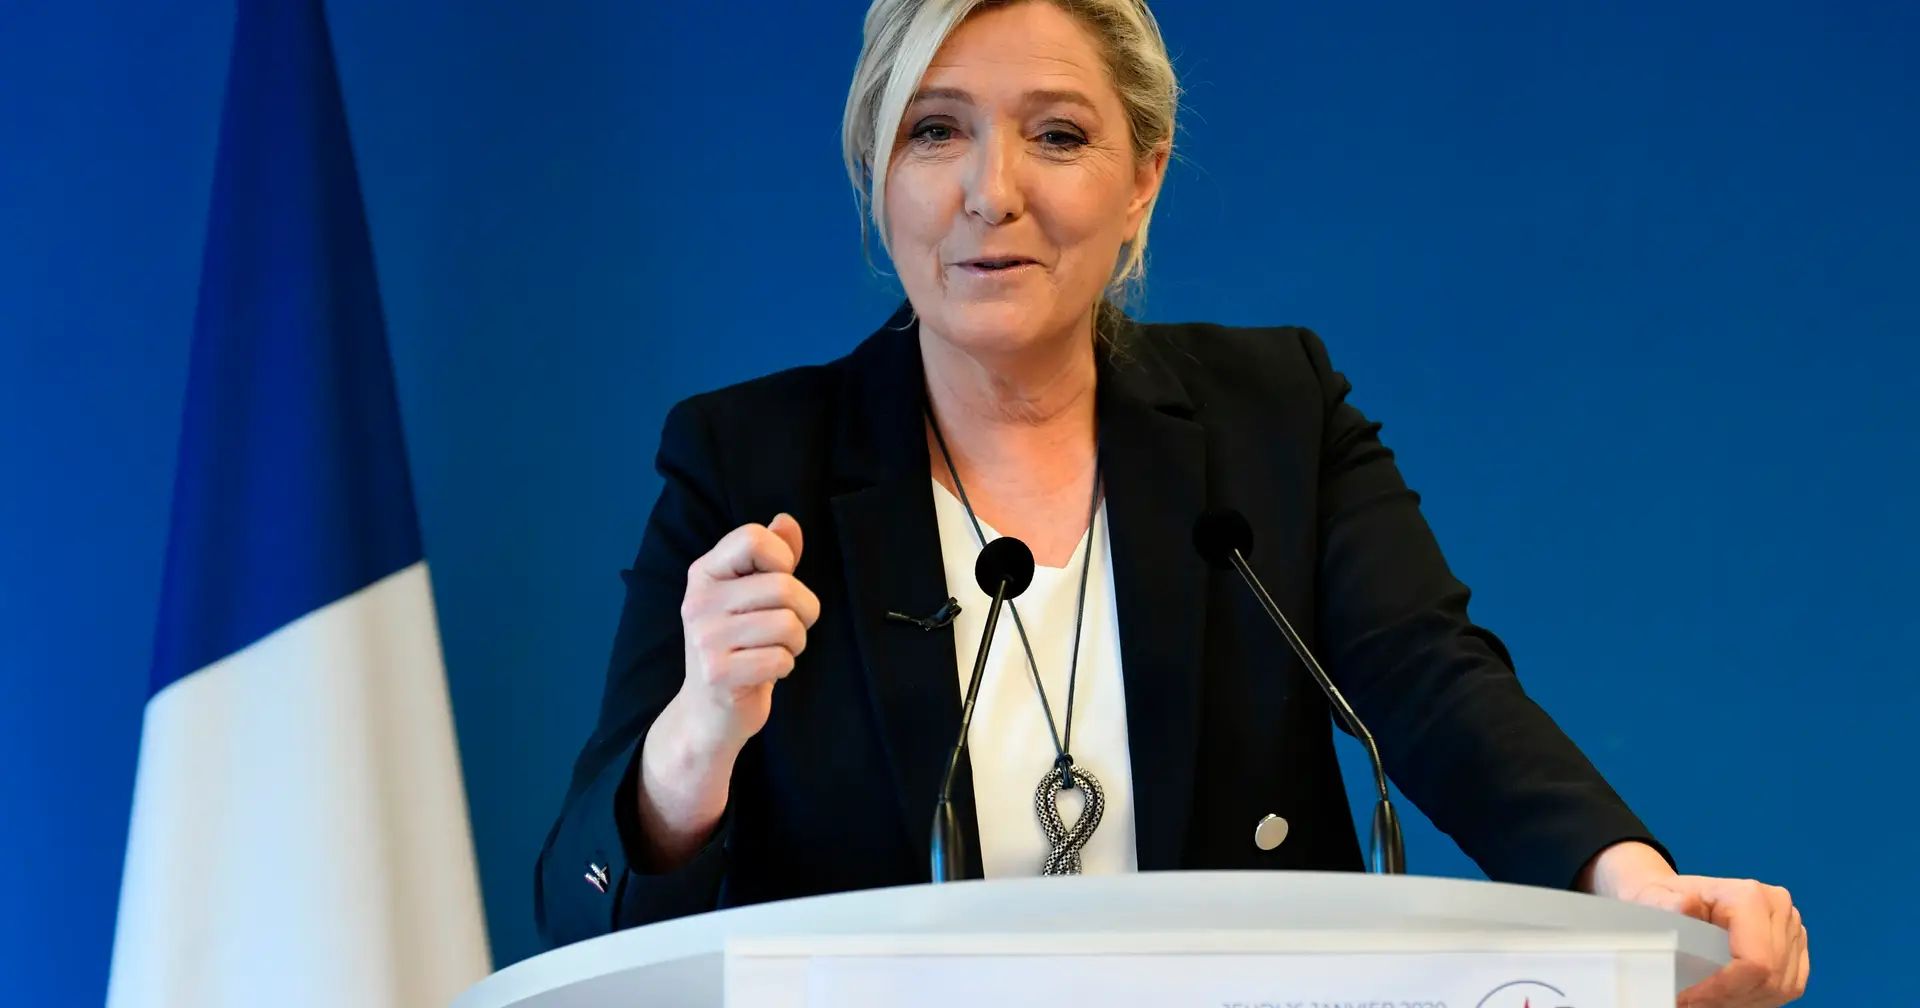 Portugueses em França temem “caos” com possível vitória de Marine Le Pen